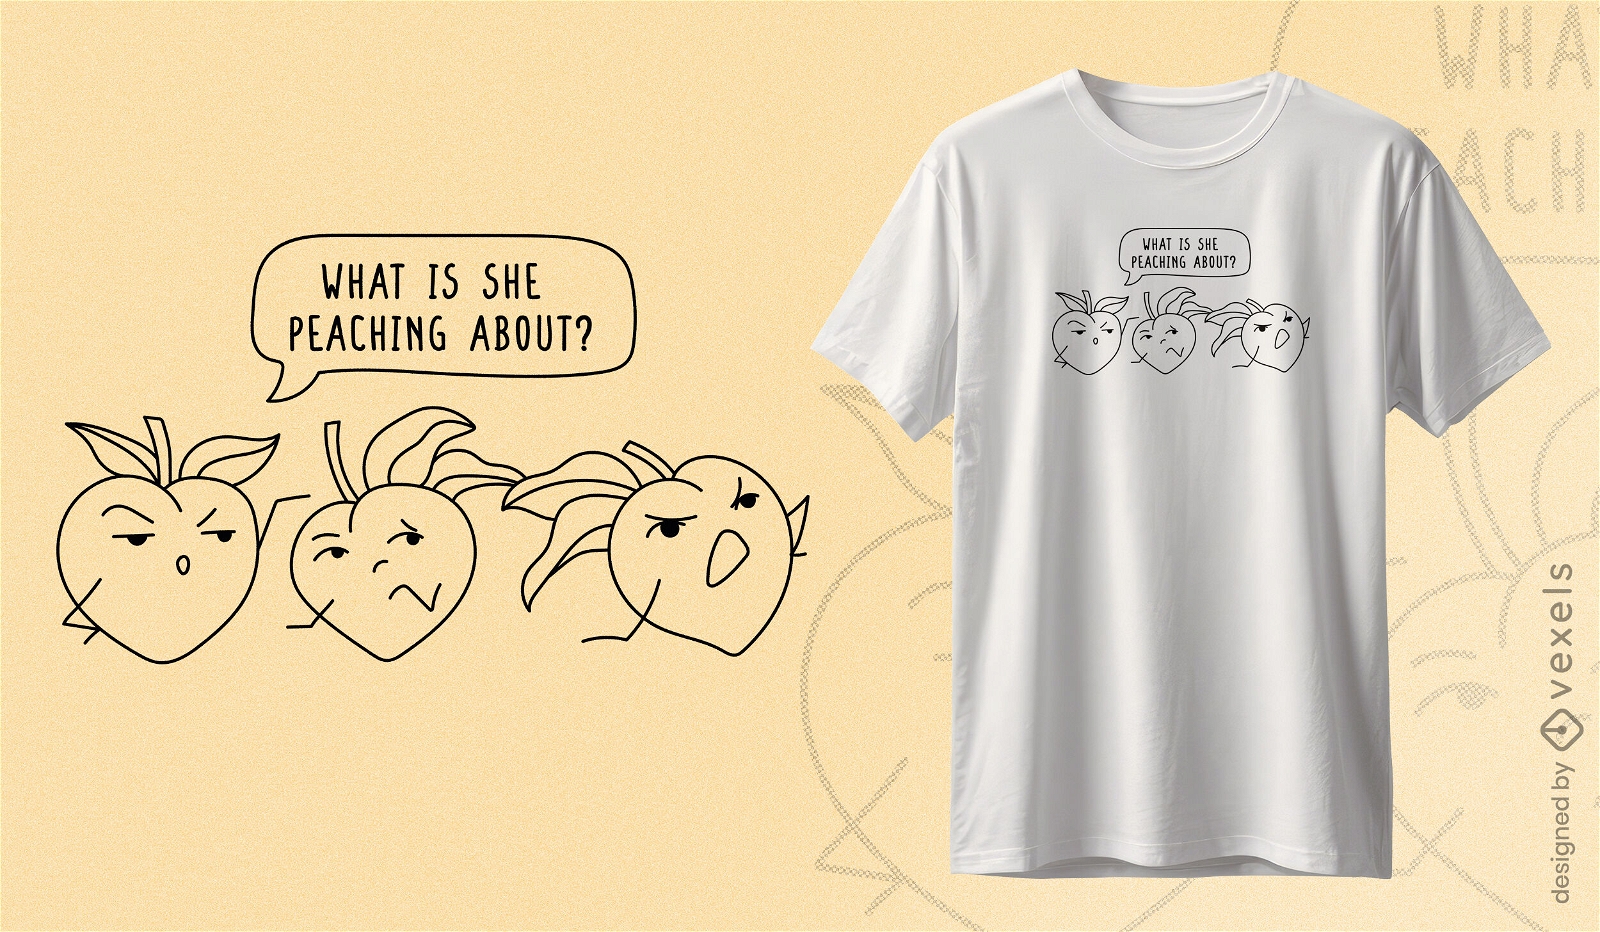 Peach pun humor t-shirt design